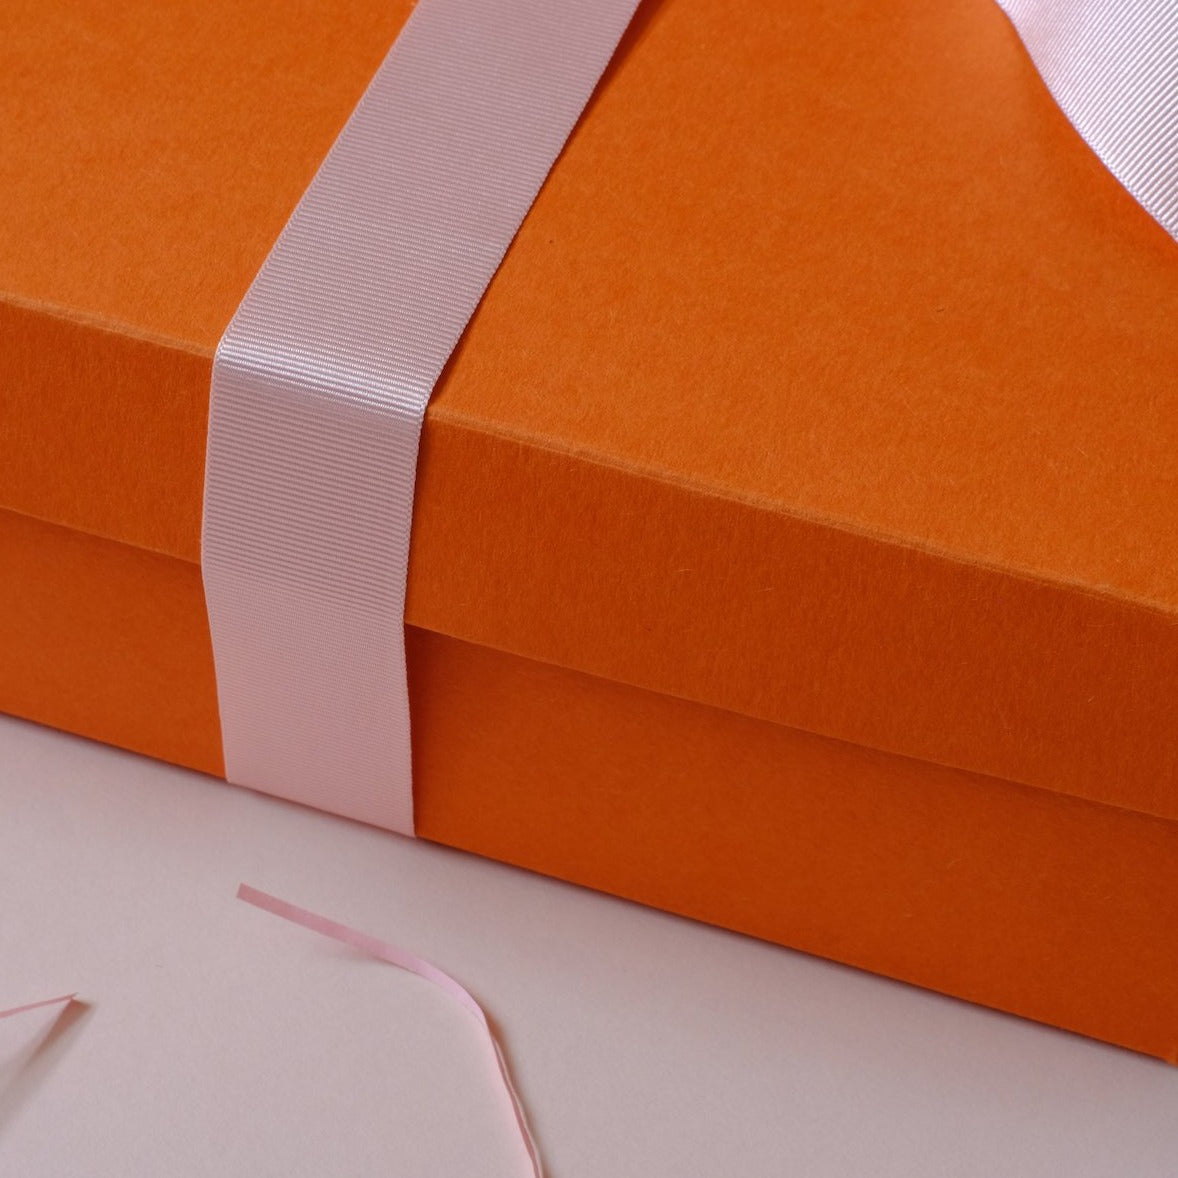 Pink Ribbon on Orange Box